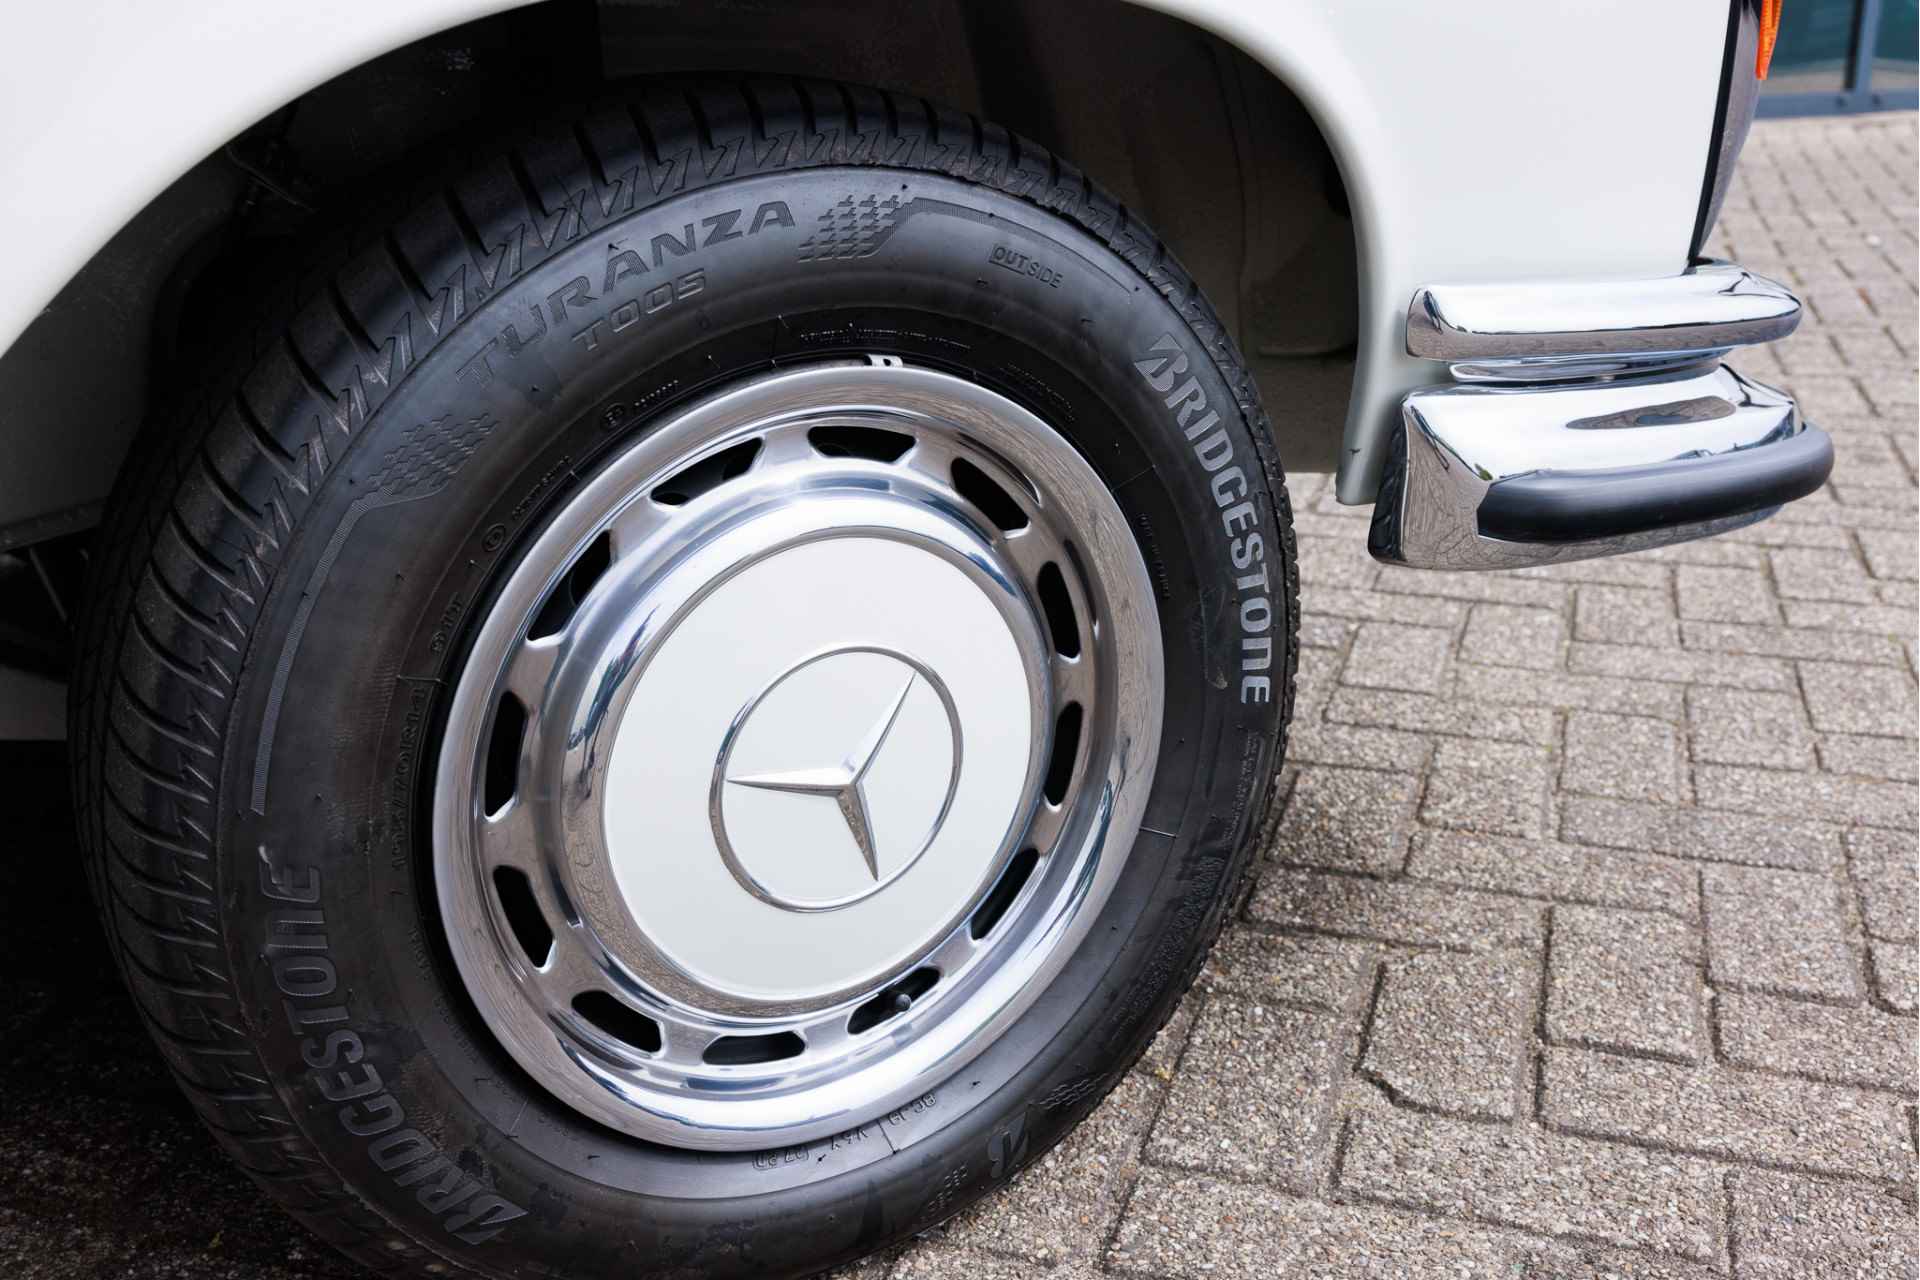 Mercedes-Benz W111 280 SE Cabriolet Volledig gerestaureerd  Verkoop in opdracht | Flachkühler | Compleet gerestaureerd - 11/31